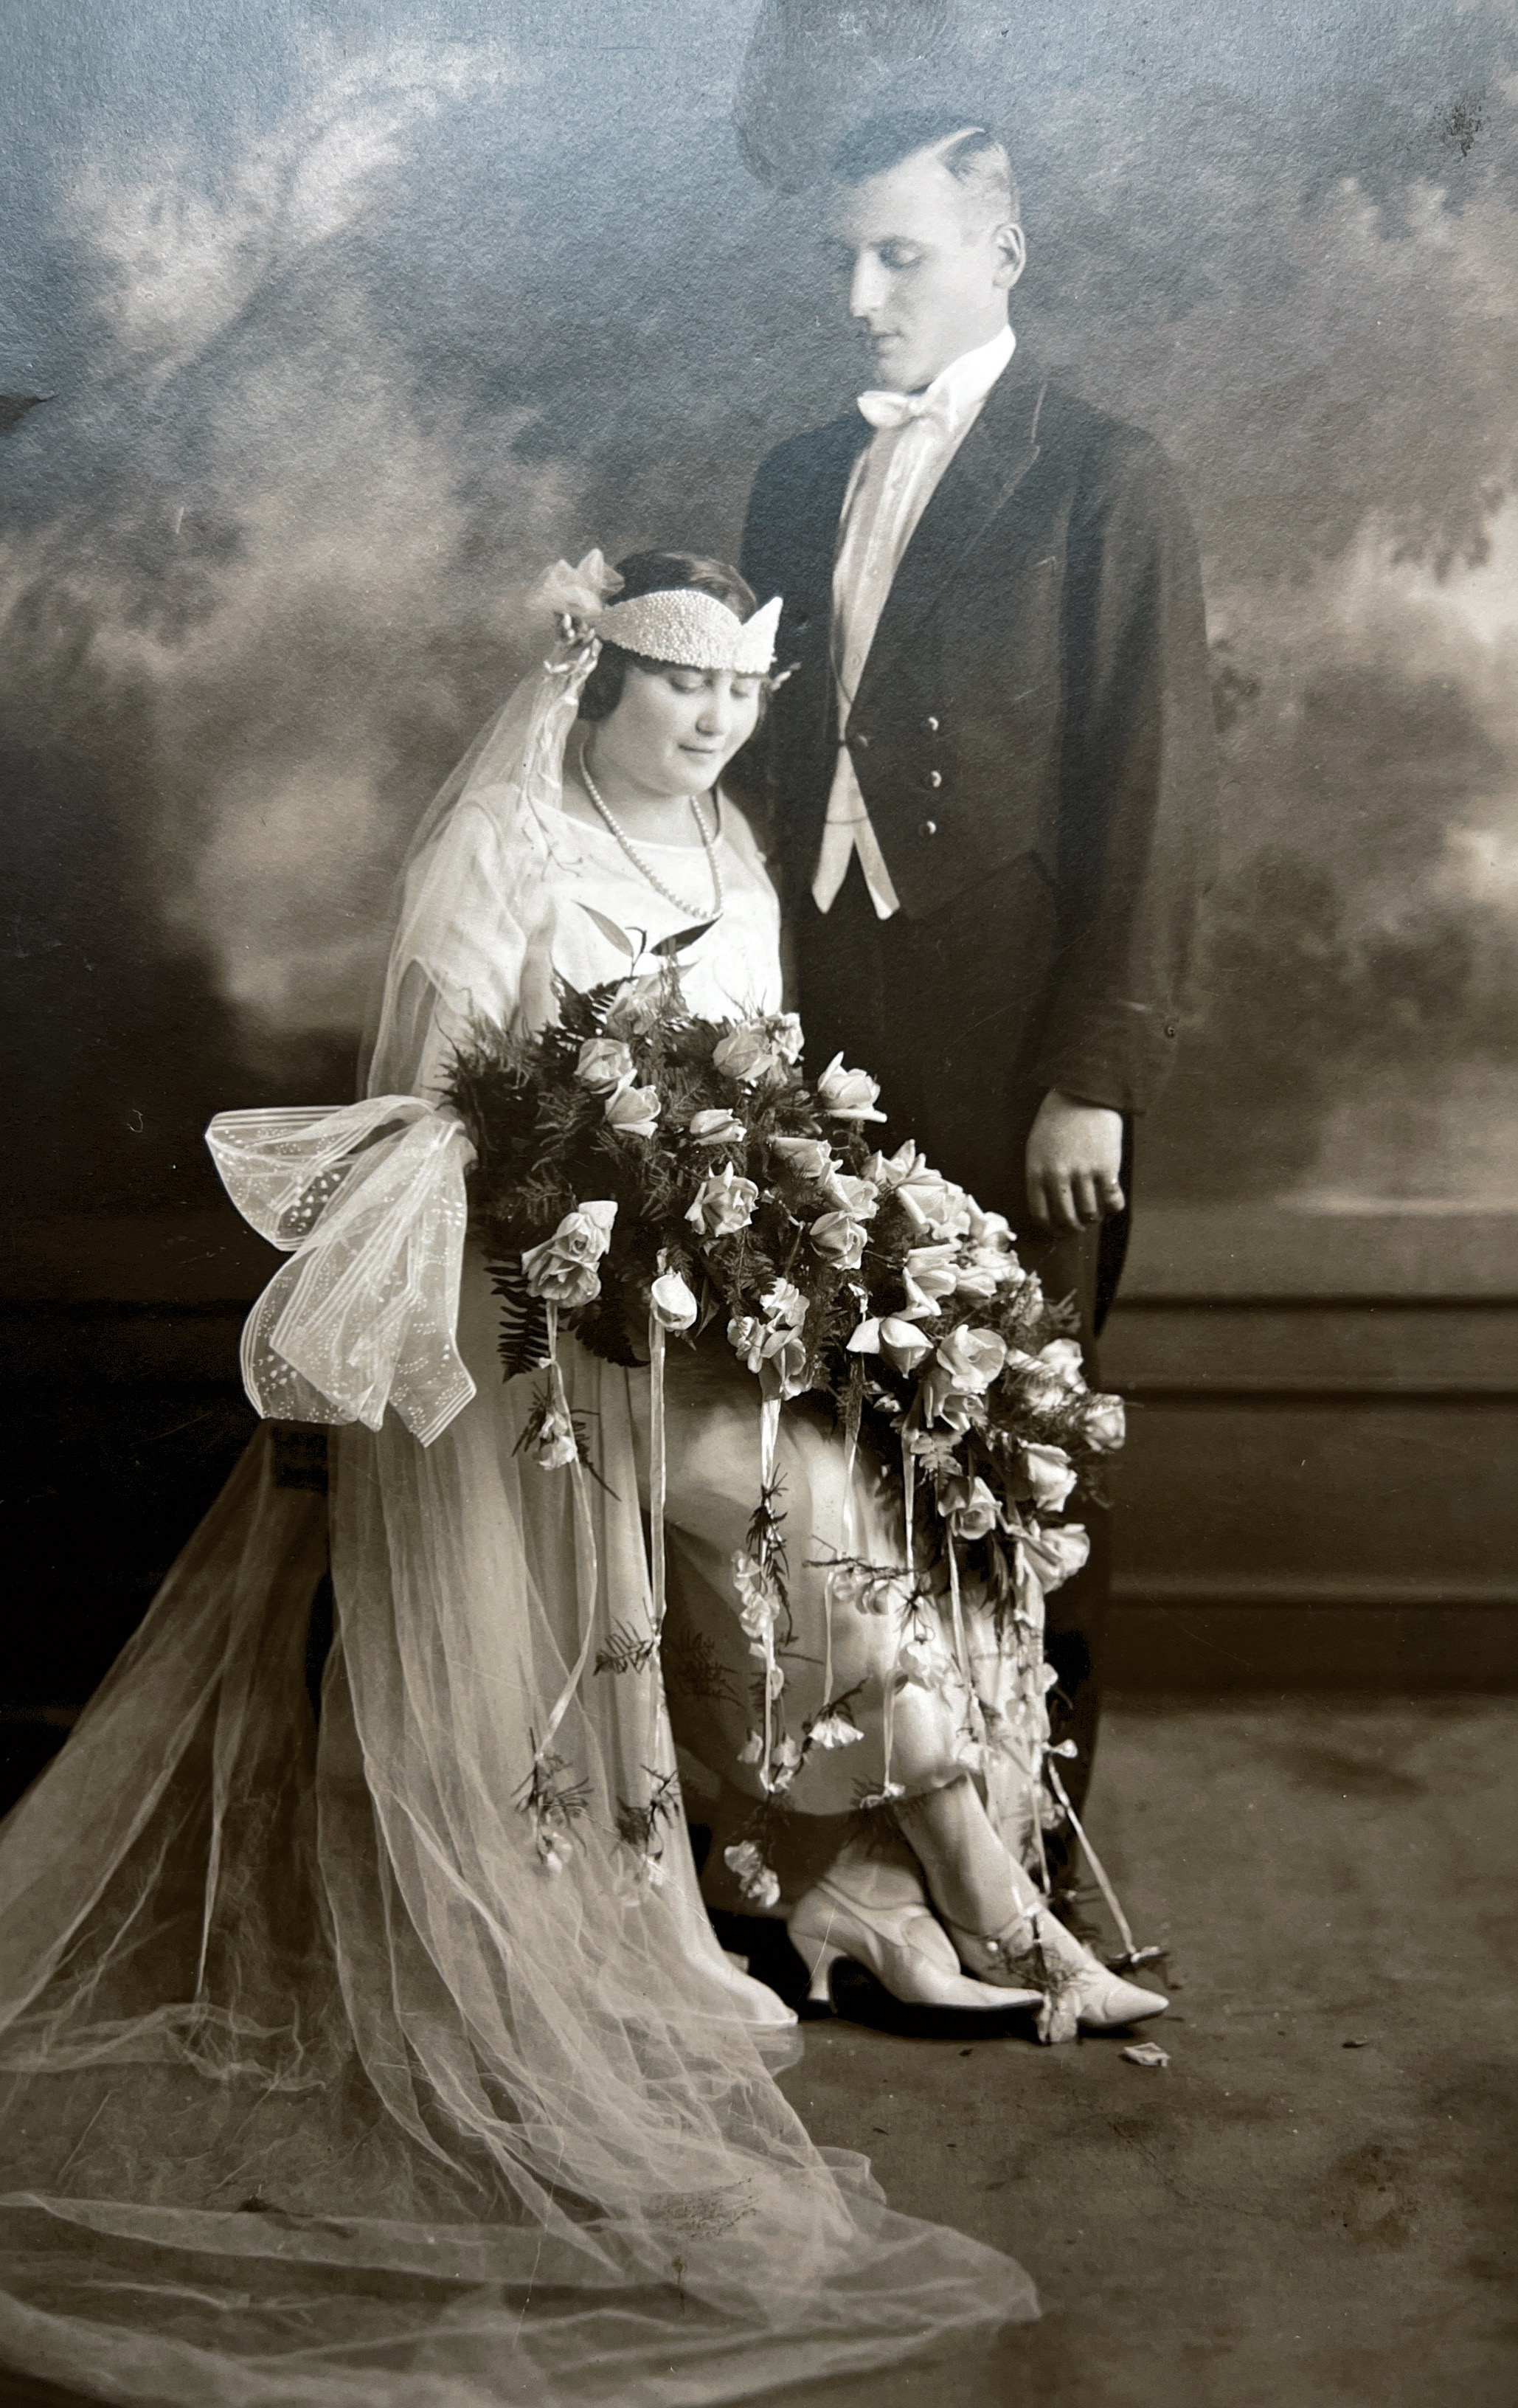 Yetta and Max Feinstein wedding photo around 1920